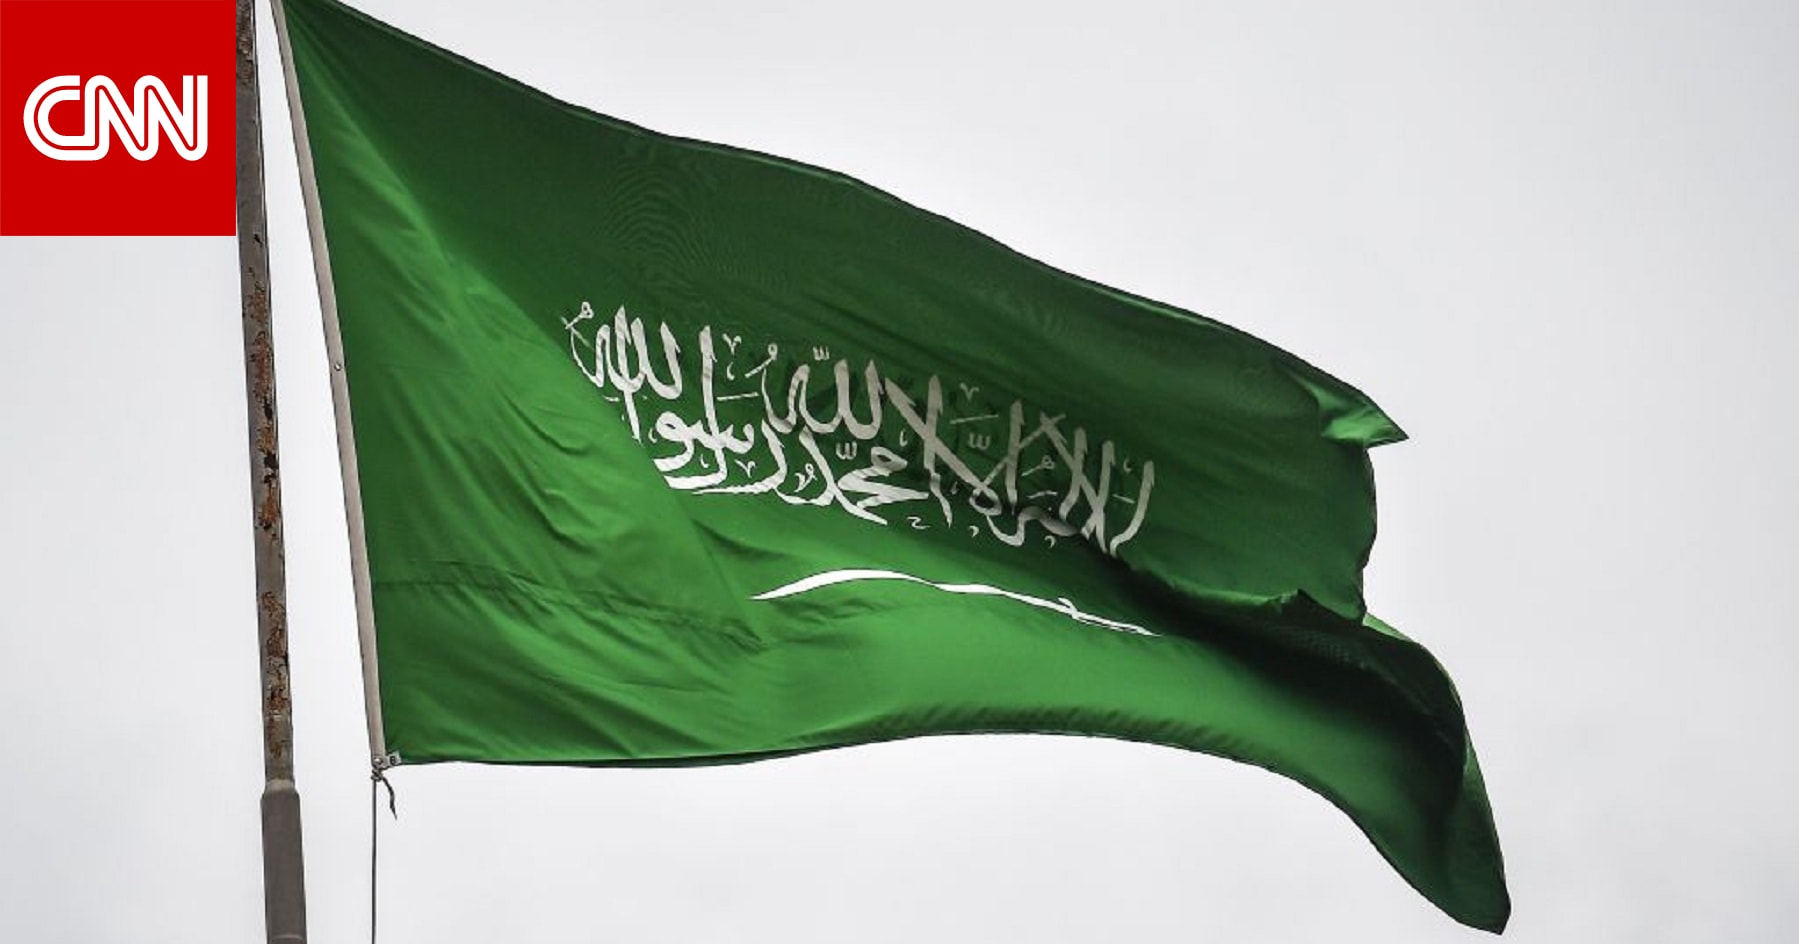 السعودية تقارير تعذيب معتقلين في المملكة لا أساس لها من الصحة  CNN